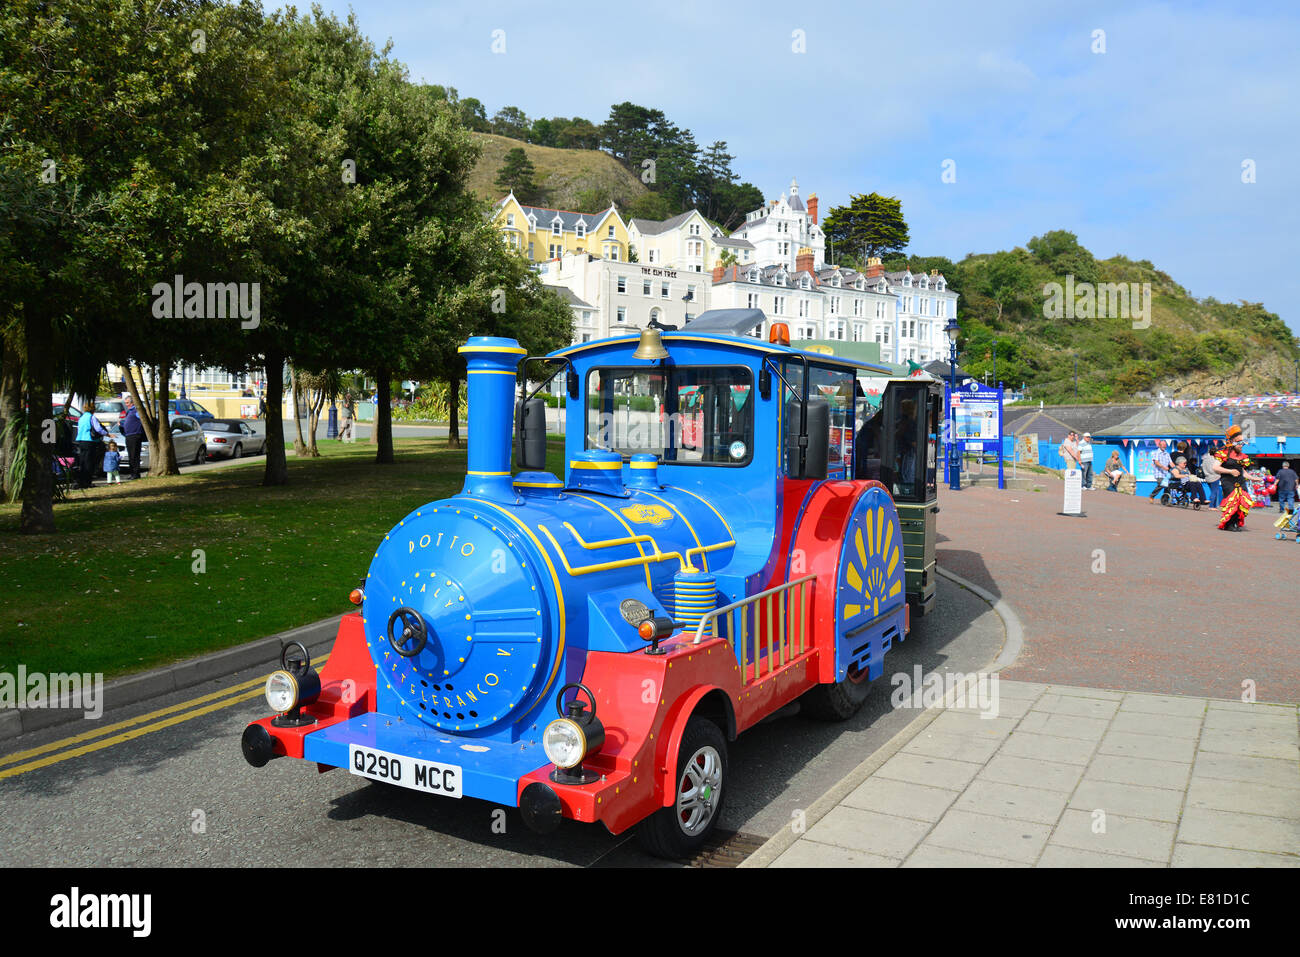 Electric promenade train on beachfront, Llandudno, Conwy County Borough (Bwrdeistref Sirol Conwy), Wales, United Kingdom Stock Photo